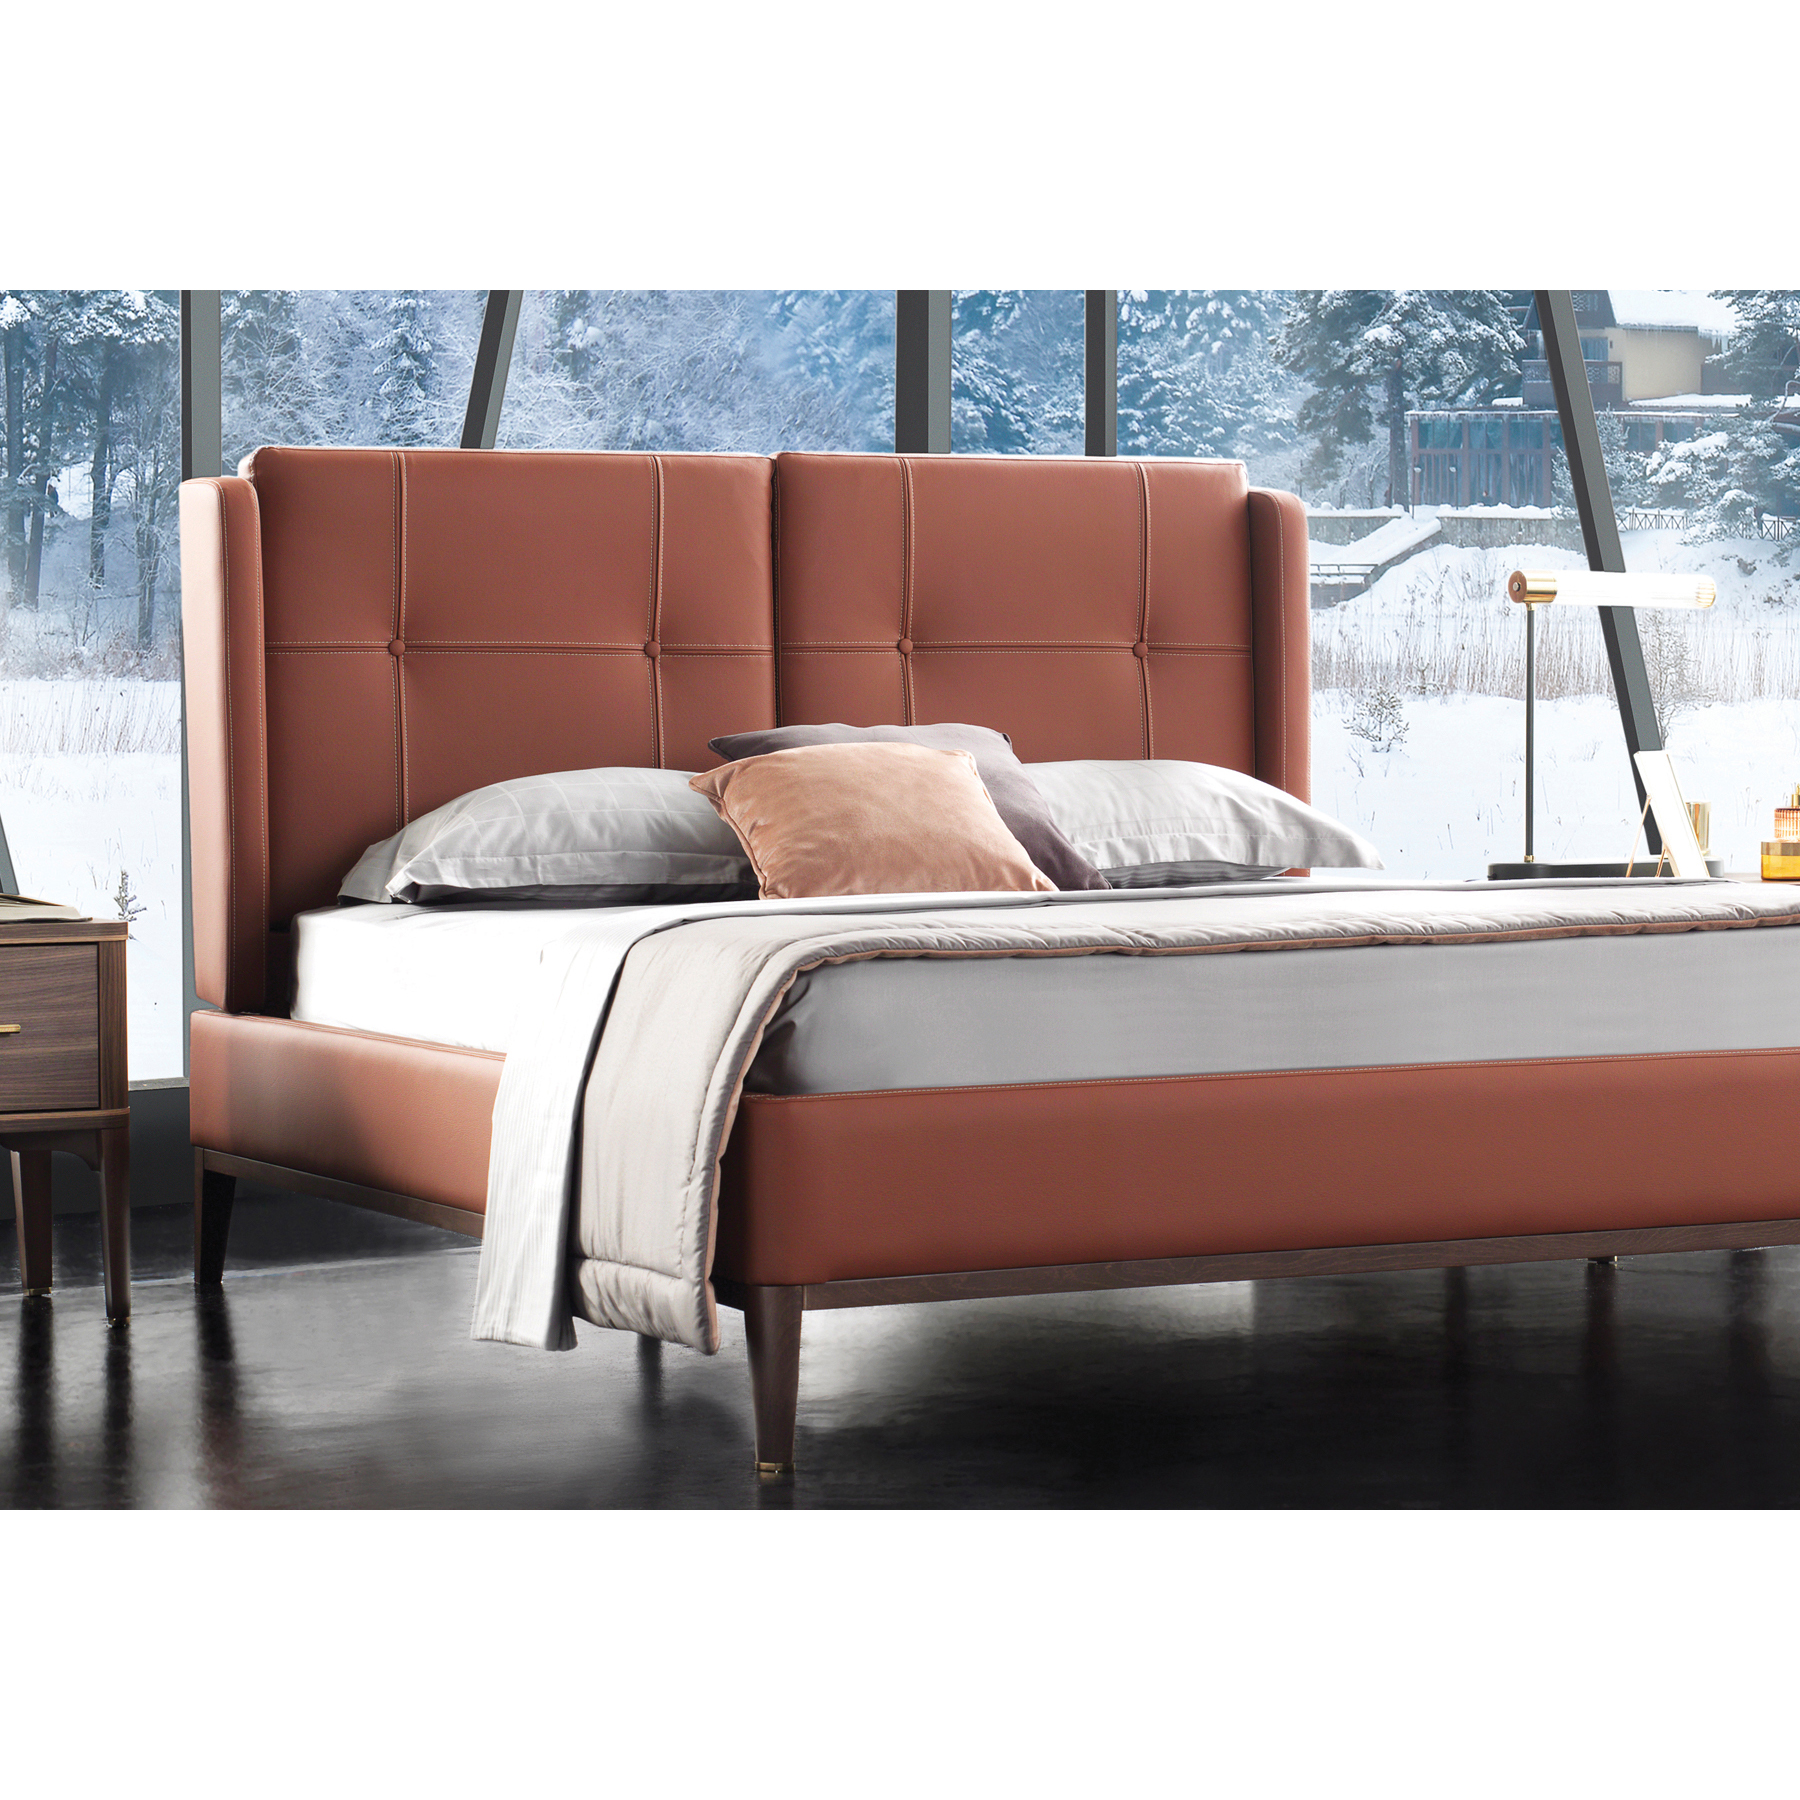 Кровать Enza Home Raum, двуспальная, 180х200 см